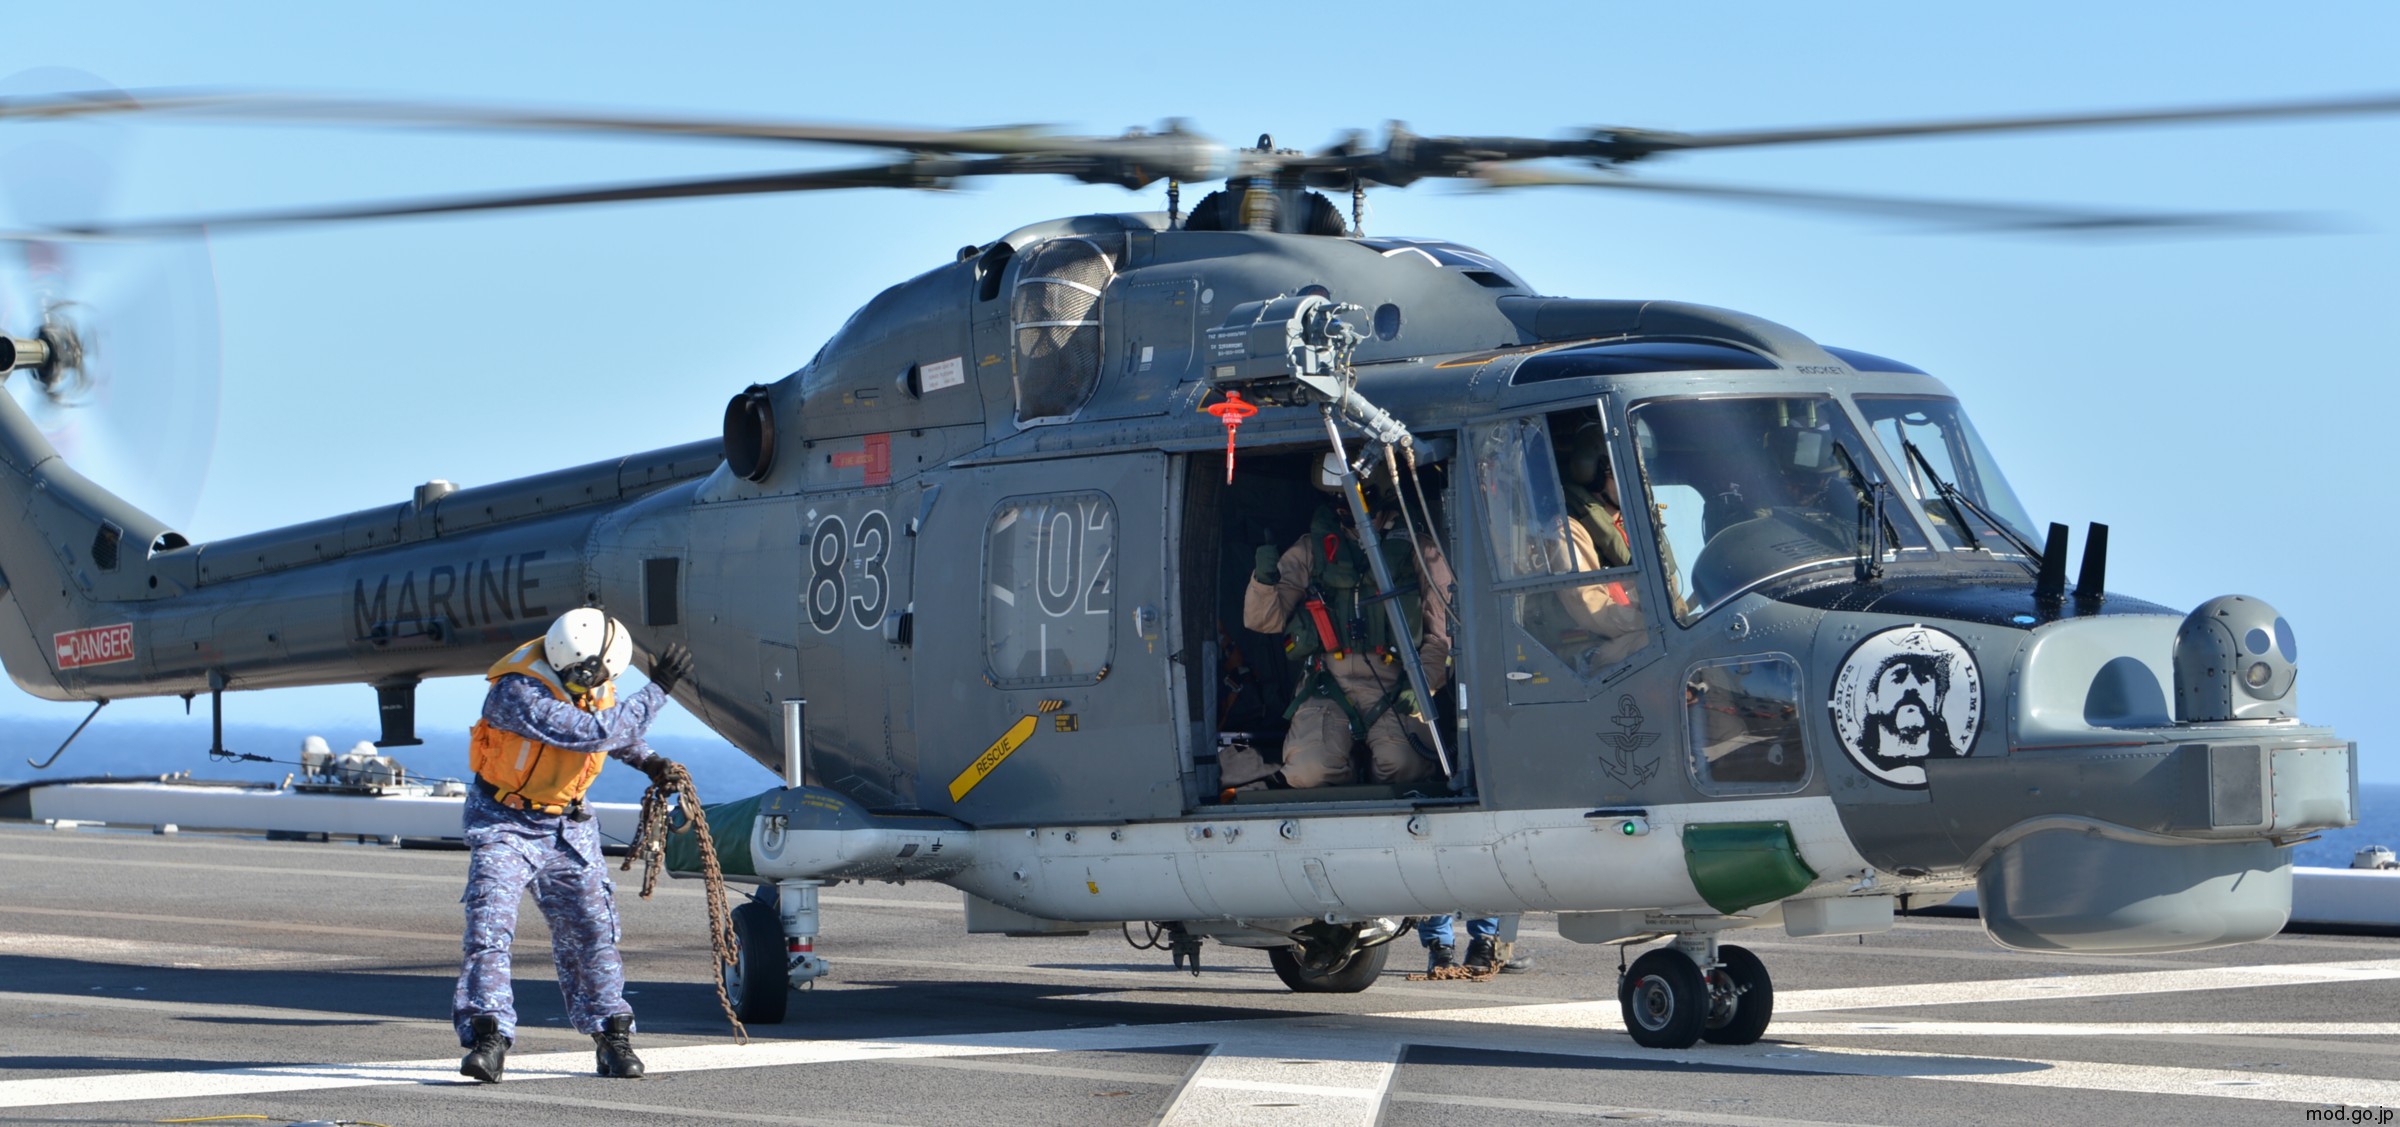 sea lynx mk.88a westland naval helicopter german navy deutsche marine 75